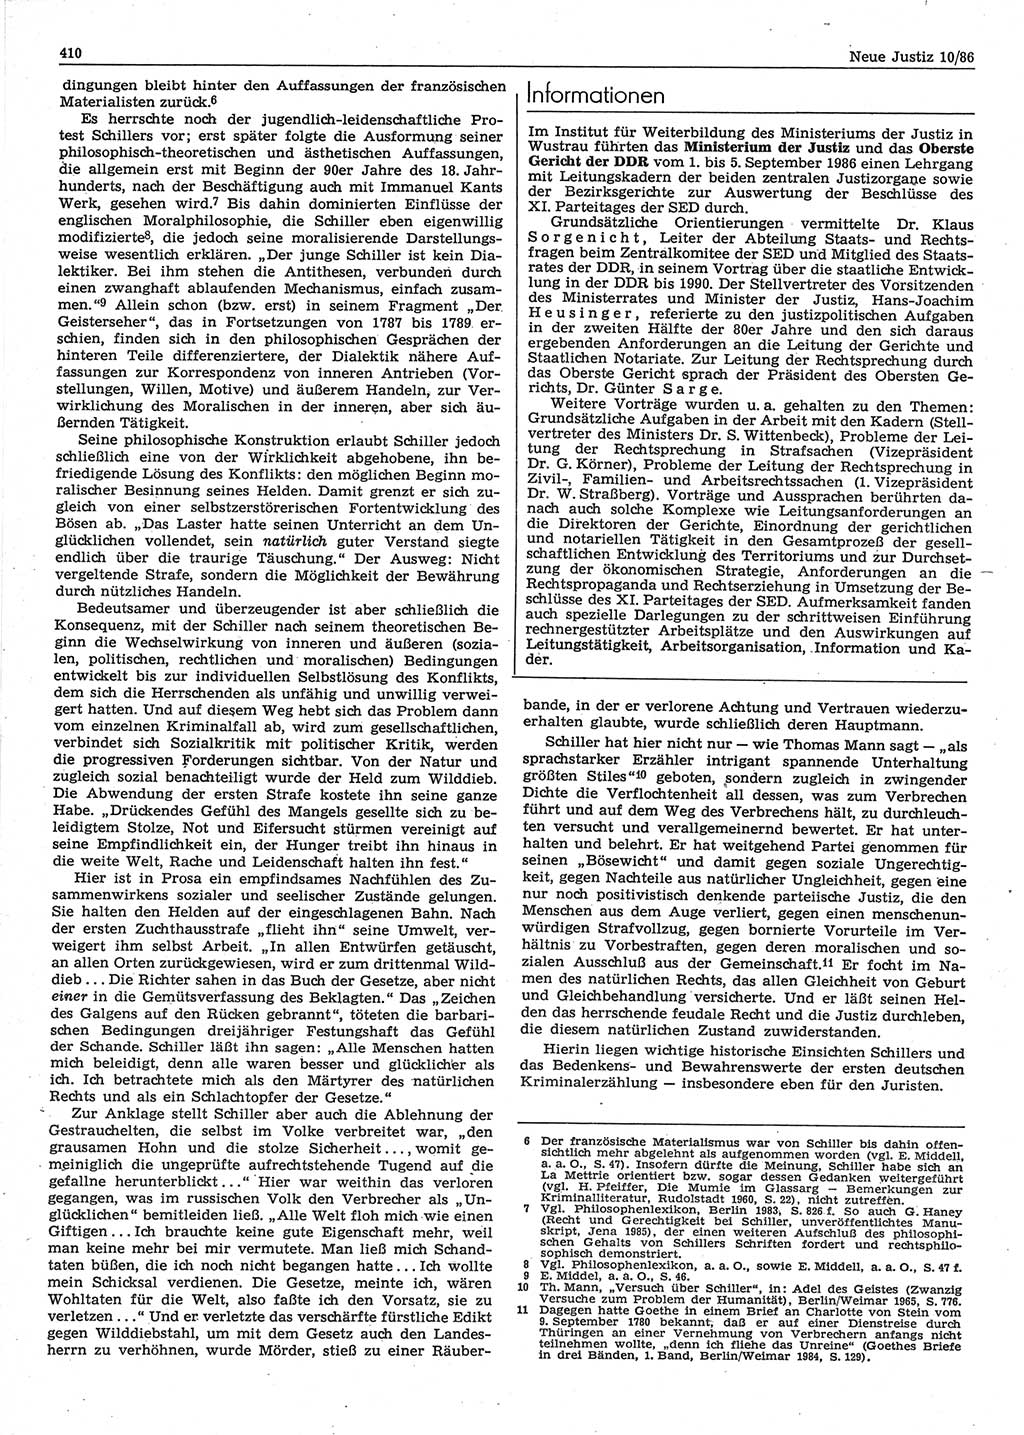 Neue Justiz (NJ), Zeitschrift für sozialistisches Recht und Gesetzlichkeit [Deutsche Demokratische Republik (DDR)], 40. Jahrgang 1986, Seite 410 (NJ DDR 1986, S. 410)